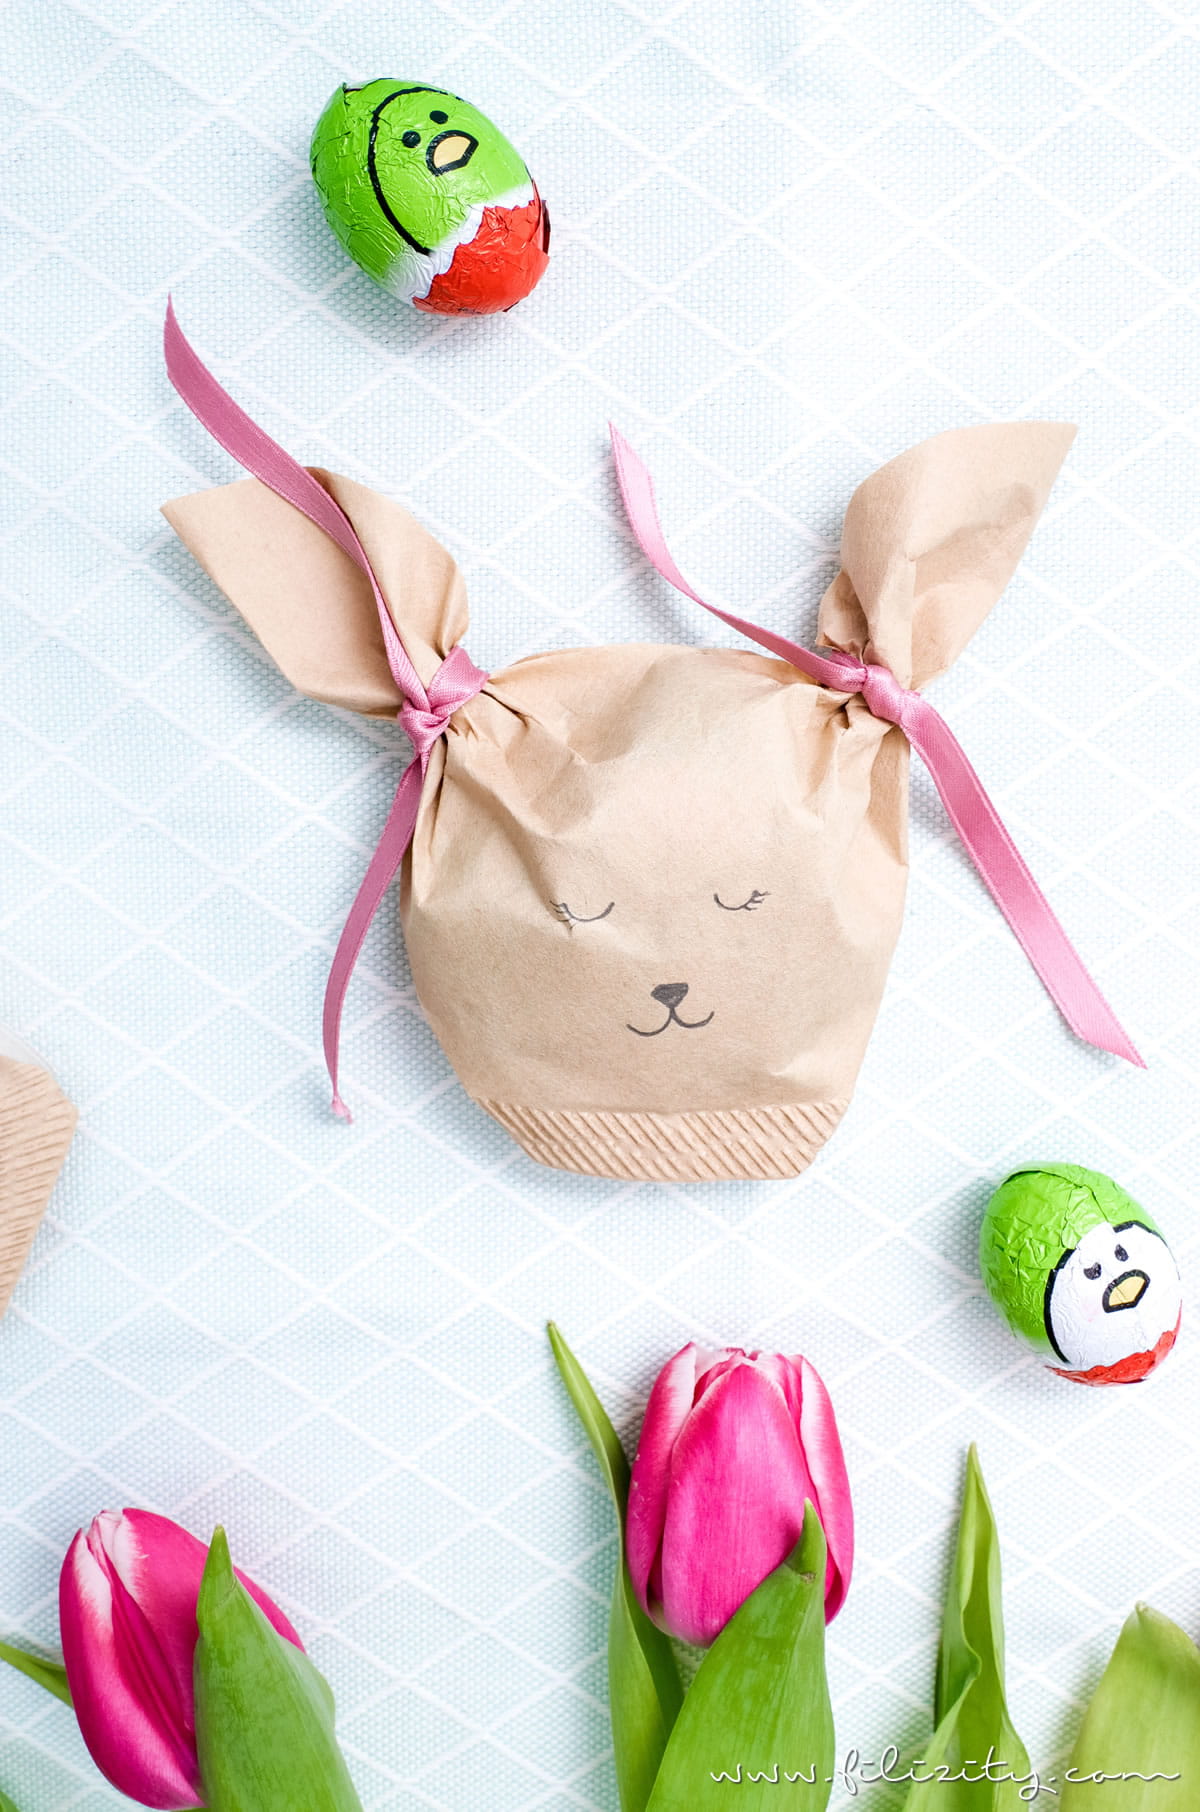 Ostergeschenke verpacken: DIY Lämmchen-/Hasentüten aus Kaffeefiltern basteln | Filizity.com | DIY-Blog aus dem Rheinland #ostern #geschenkidee